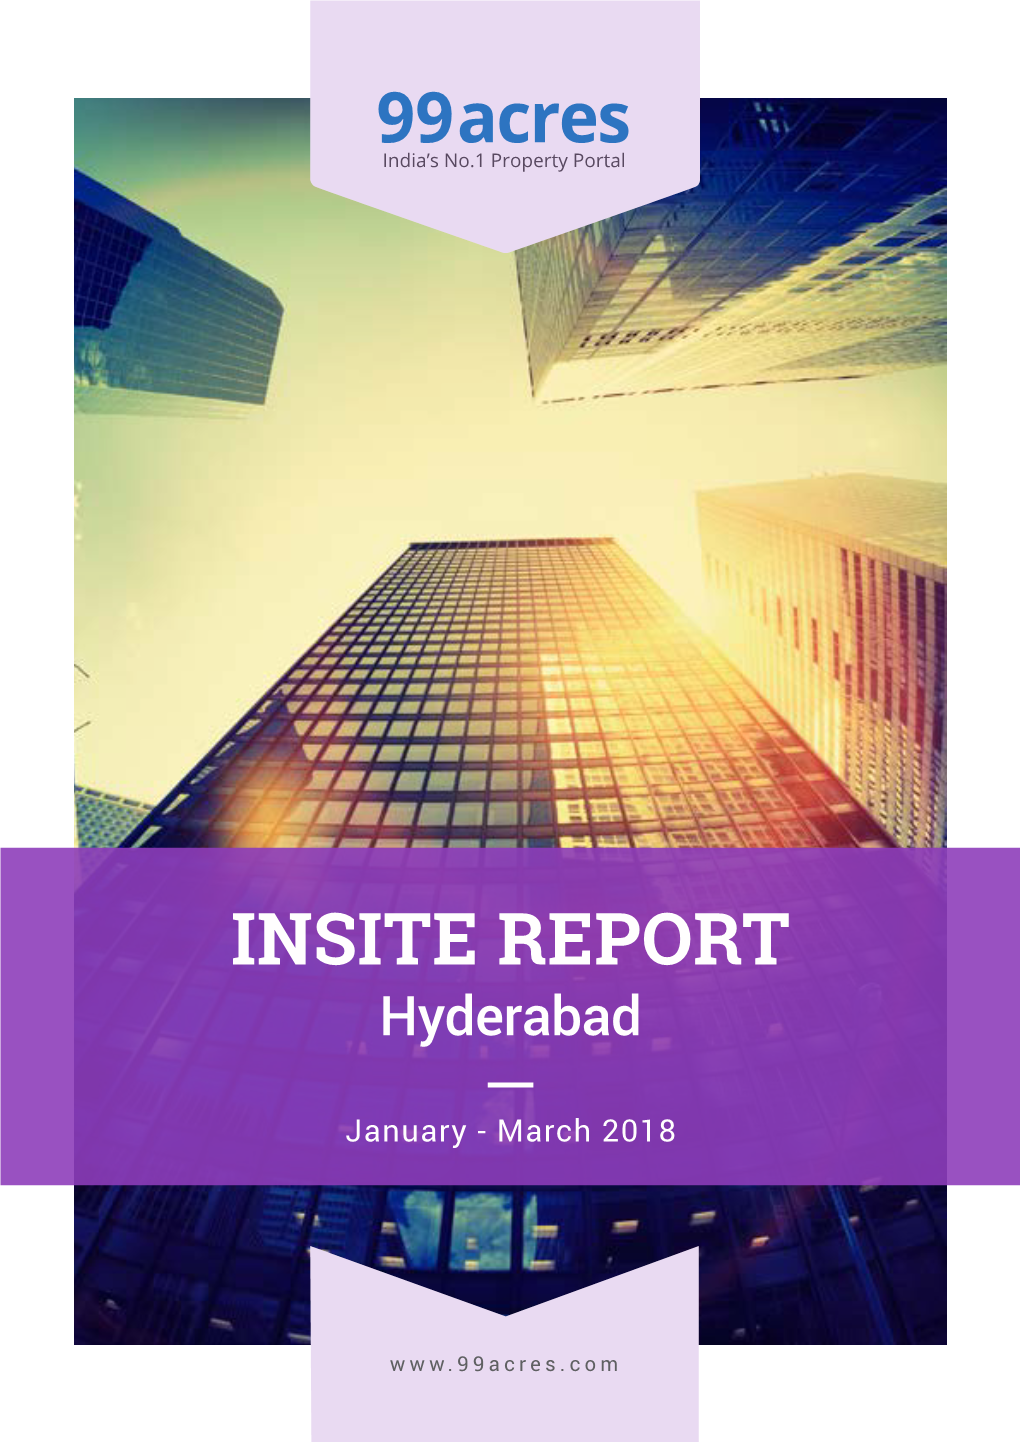 INSITE REPORT Hyderabad